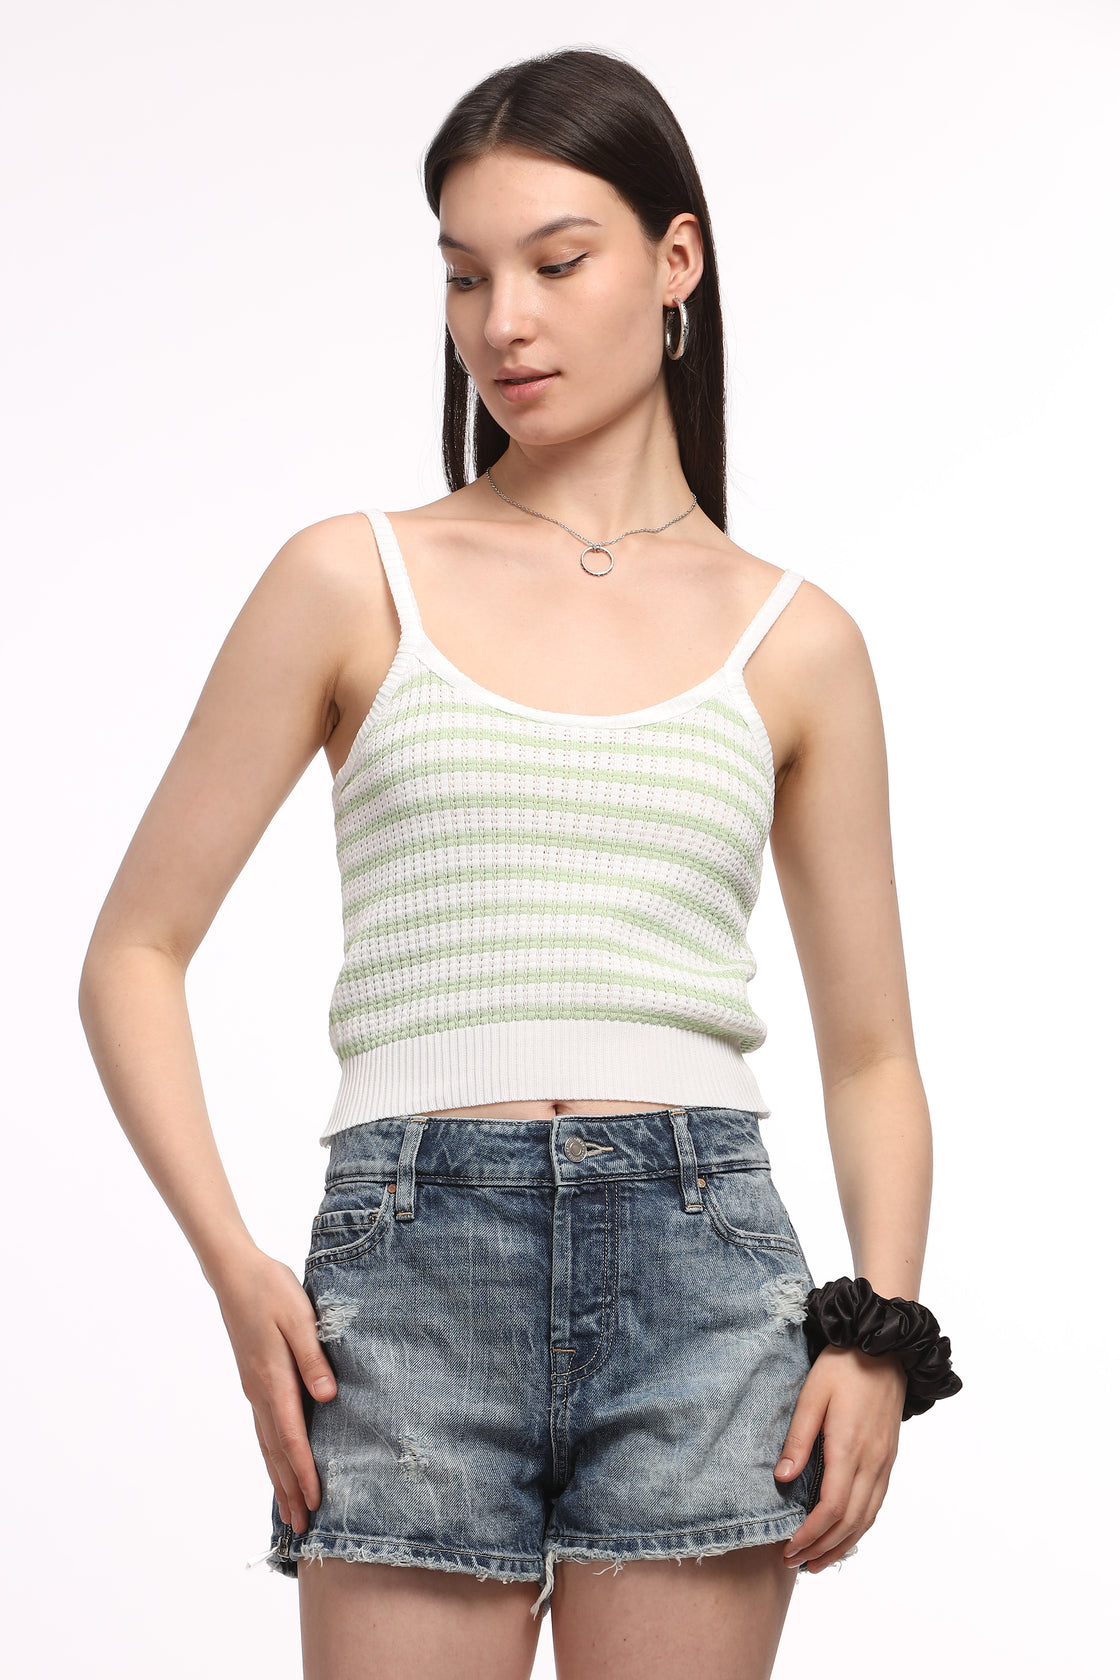 Audrey Multi Color Knit-Crochet Top